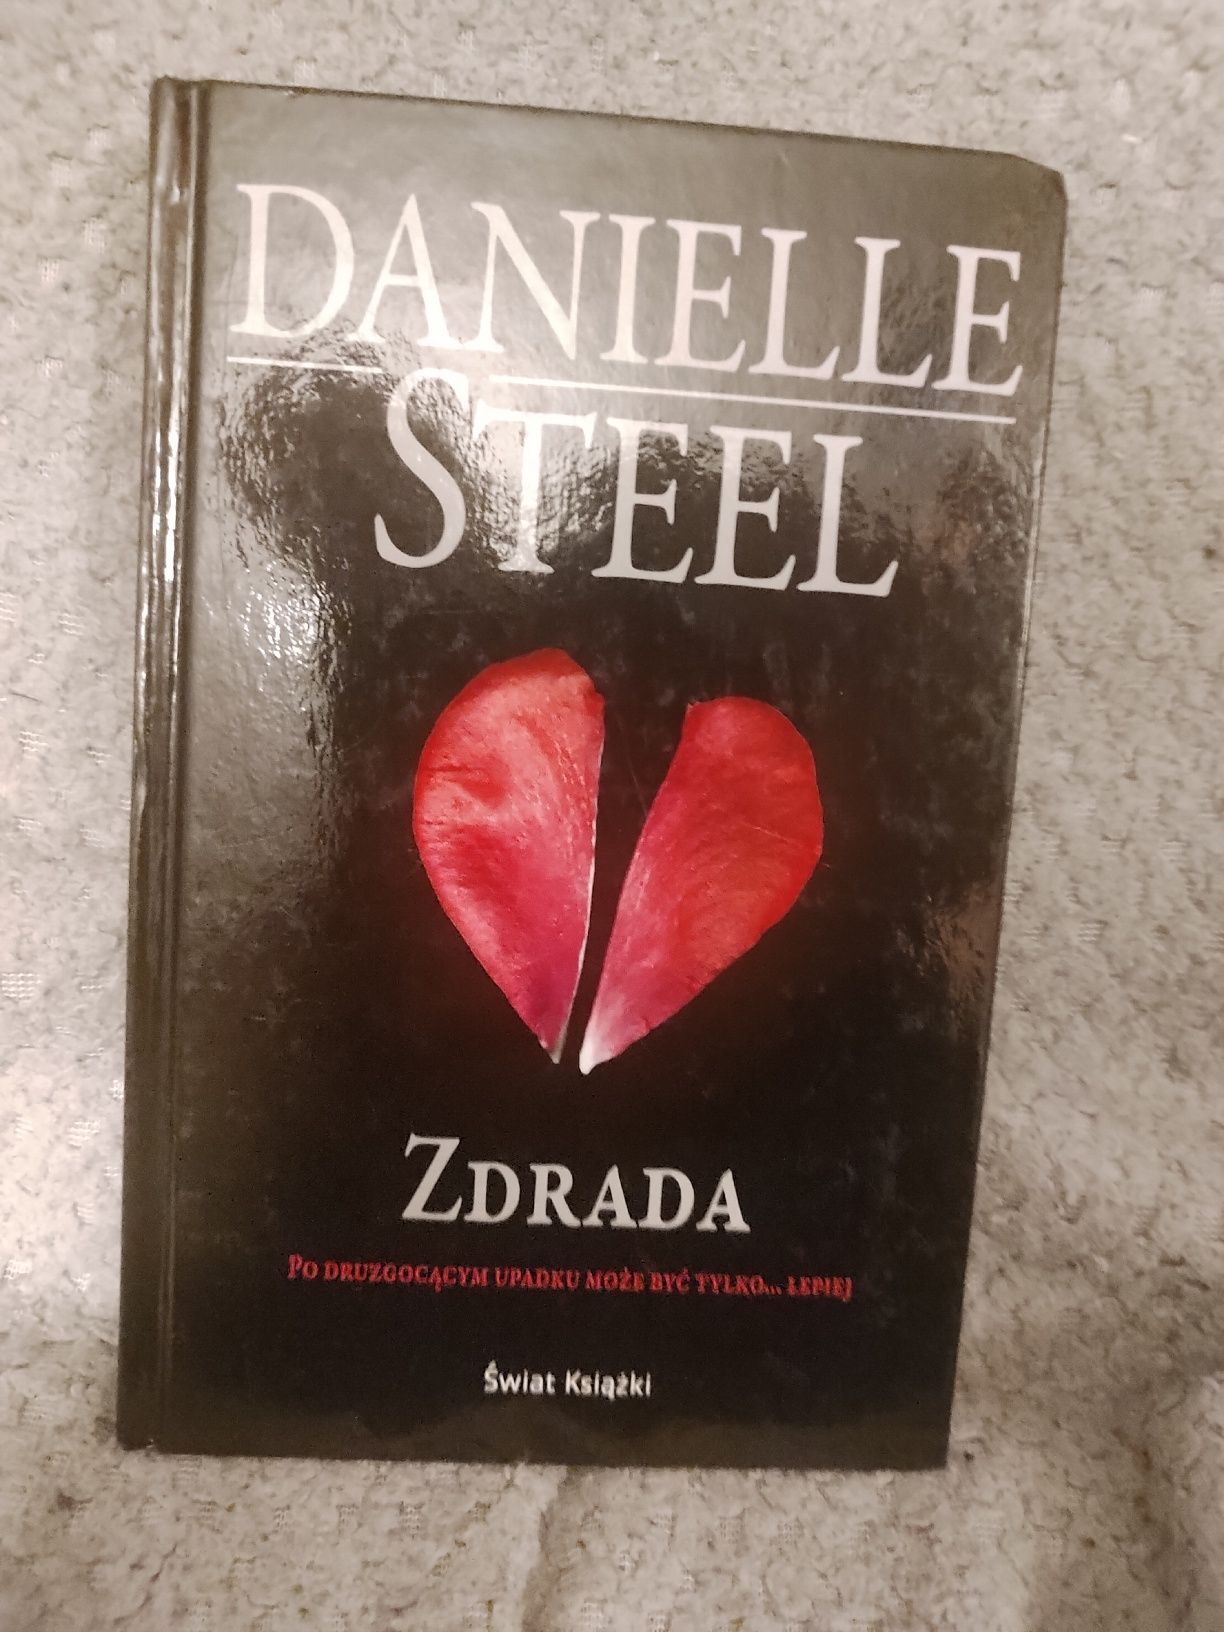 Książka Danielle Steel "Zdrada"